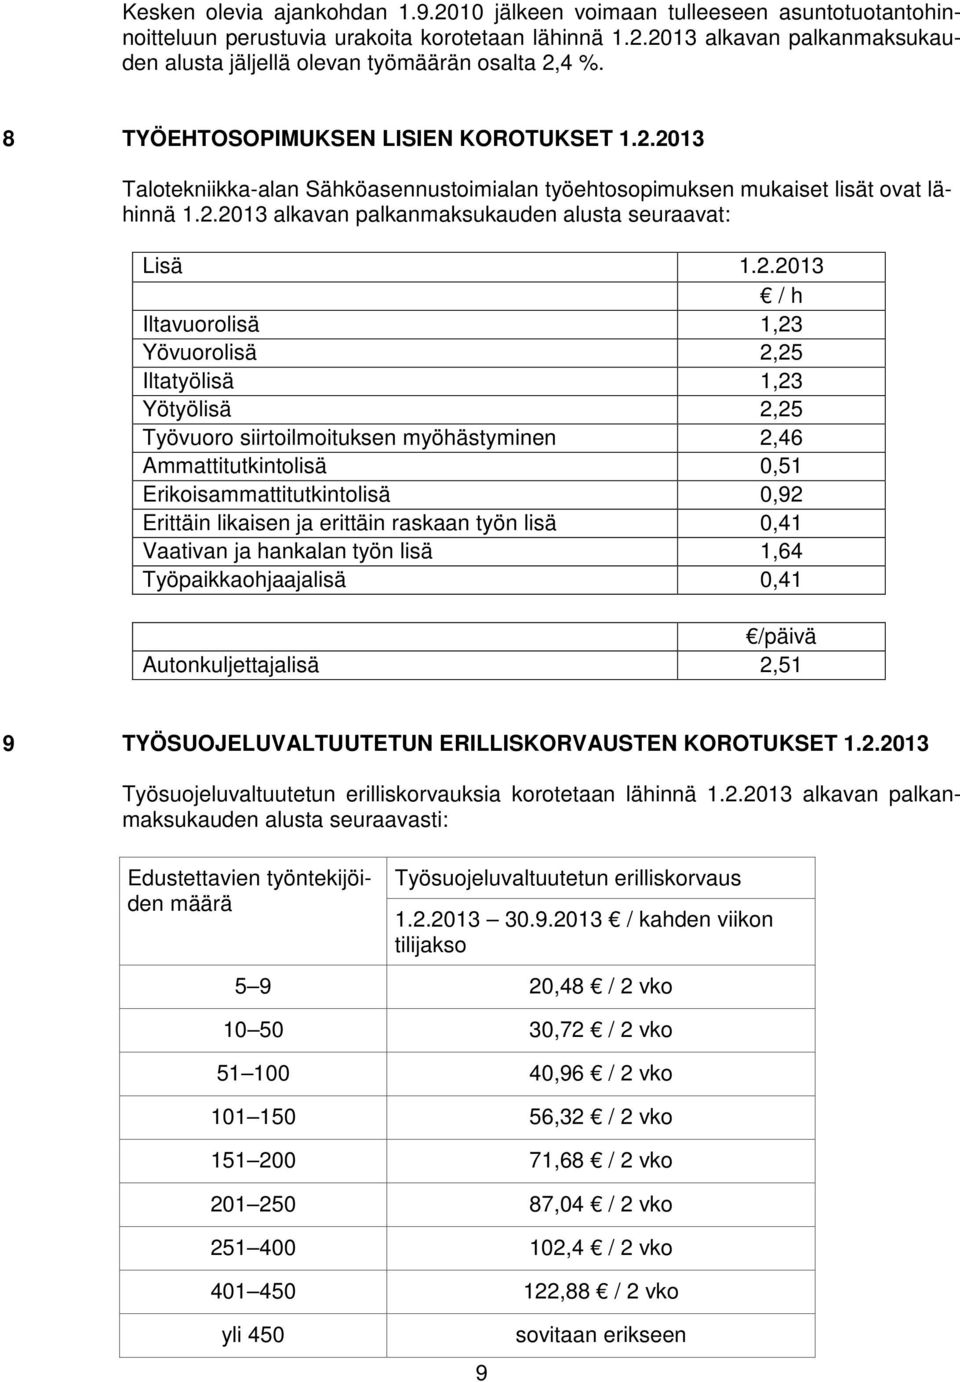 2013 Talotekniikka-alan Sähköasennustoimialan työehtosopimuksen mukaiset lisät ovat lähinnä 1.2.2013 alkavan palkanmaksukauden alusta seuraavat: Lisä 1.2.2013 / h Iltavuorolisä 1,23 Yövuorolisä 2,25